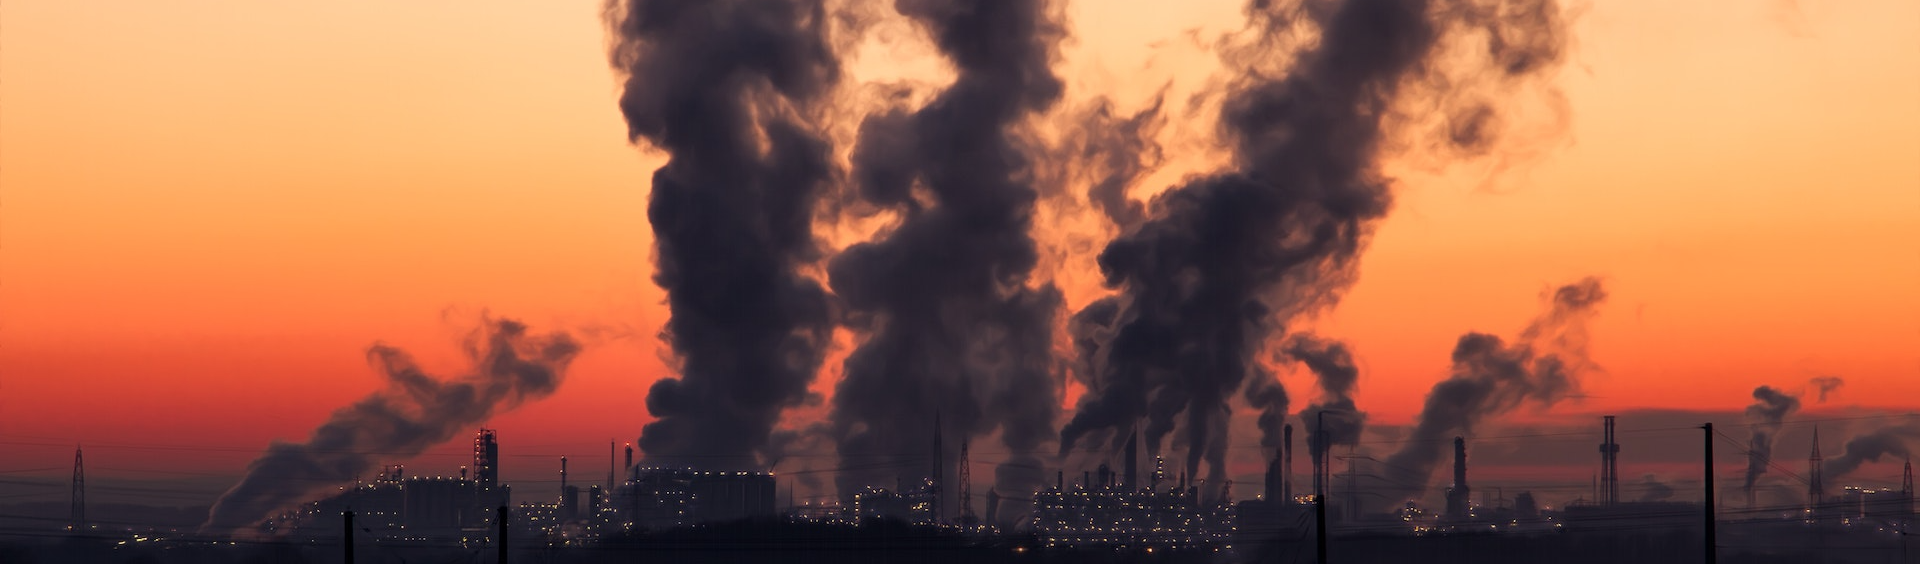 COP27 no Egito: encontro precisa debater ações reais e radicais contra crise climática